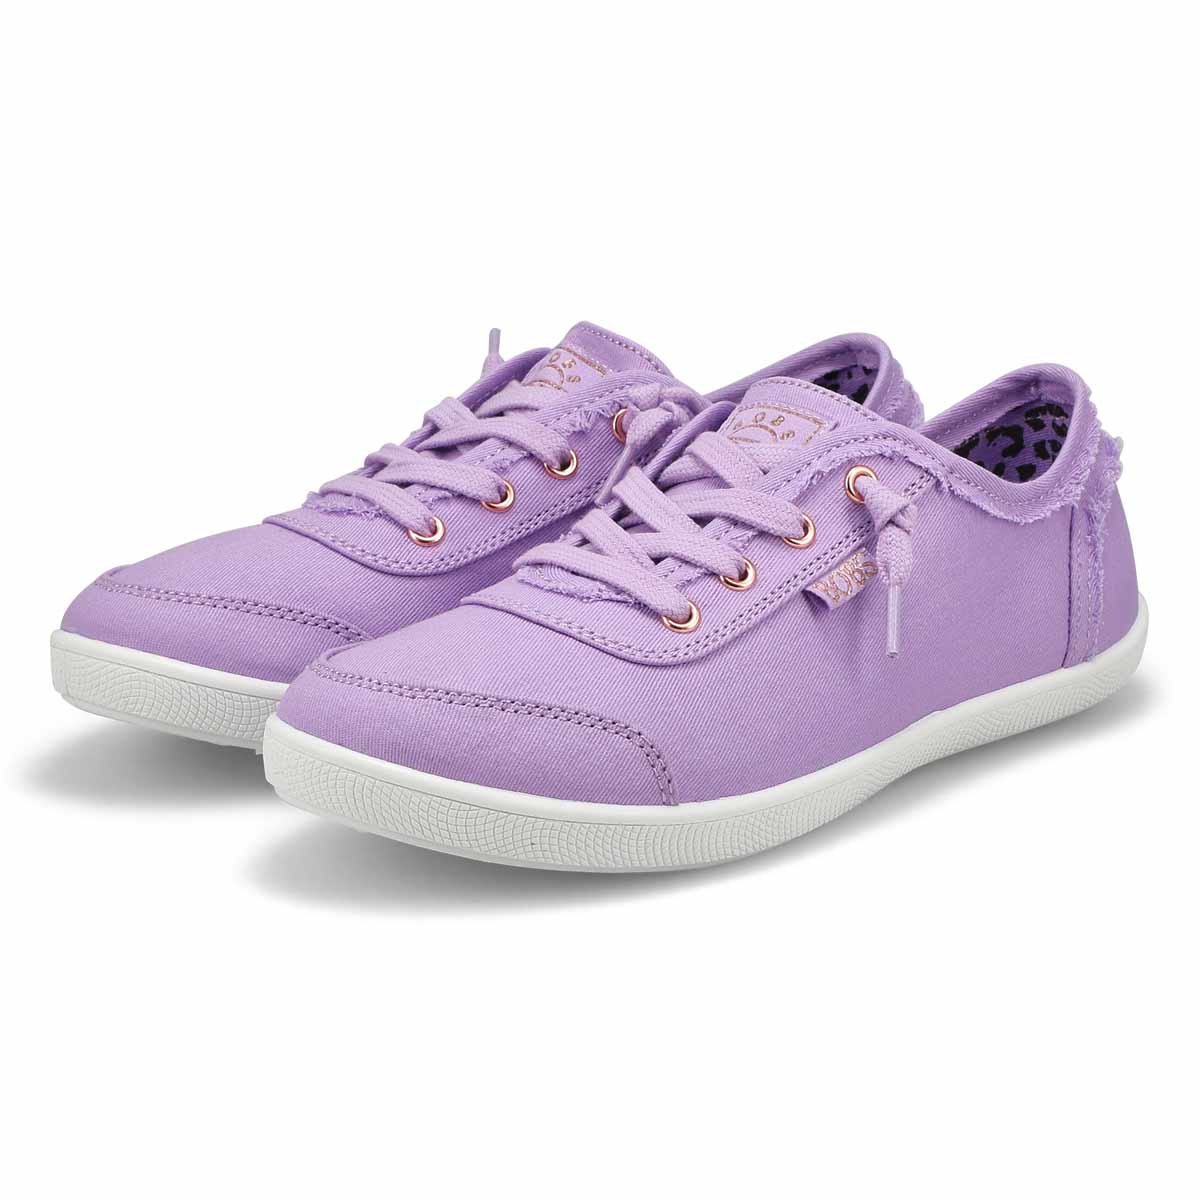 Women's Bobs B Cute Slip On Sneaker - Lilac